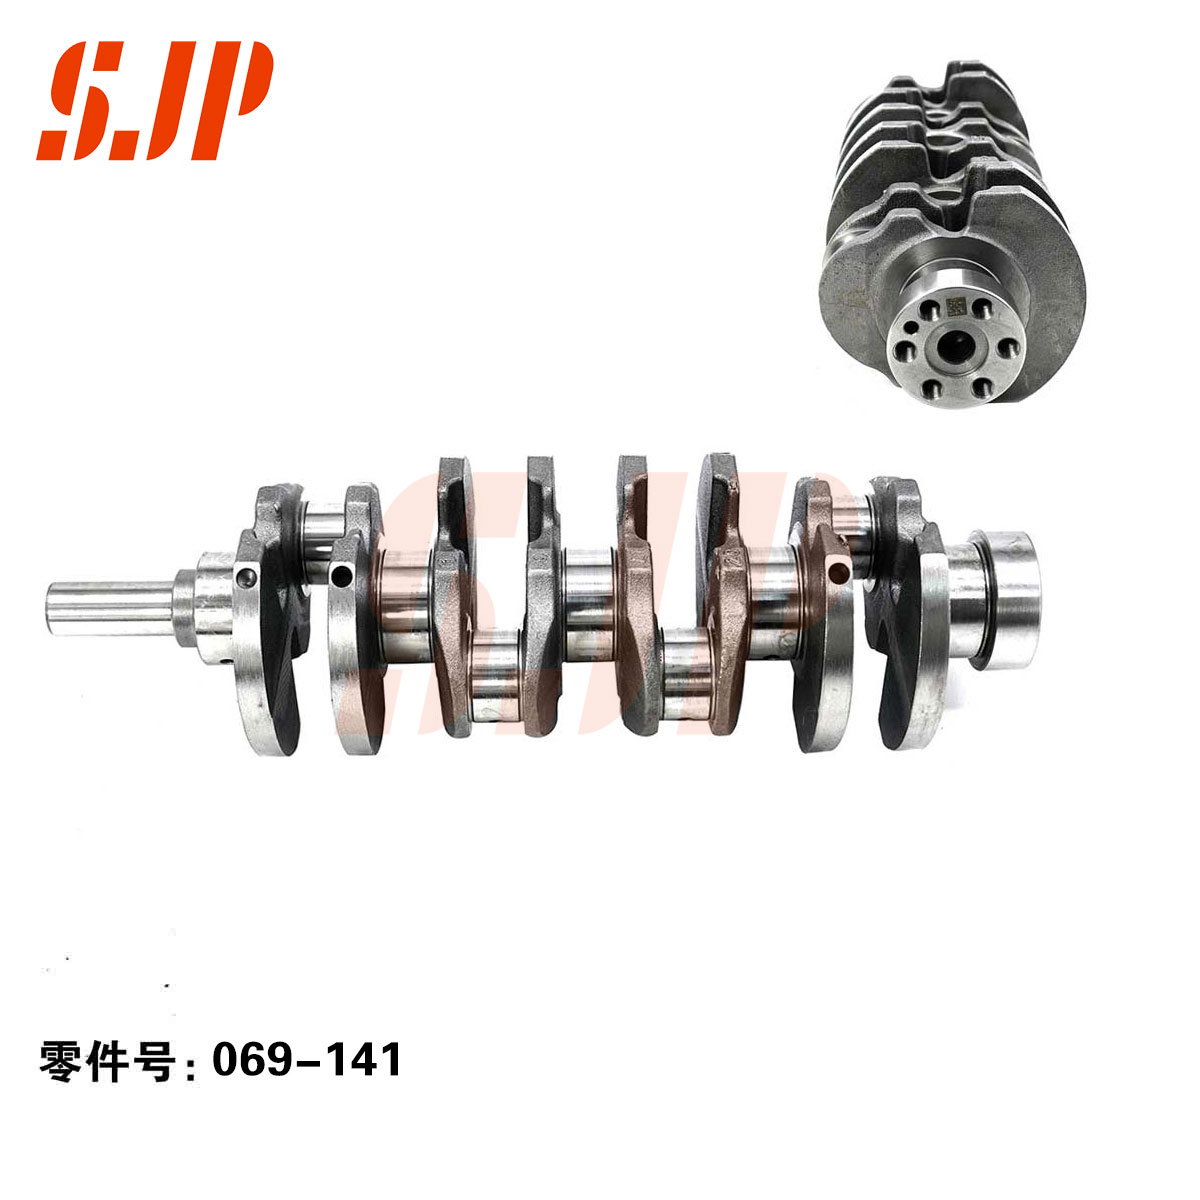 SJ-069-141 Crankshaft For DK12-06/DK12C/DK12-01/DK12-05/DK12-10